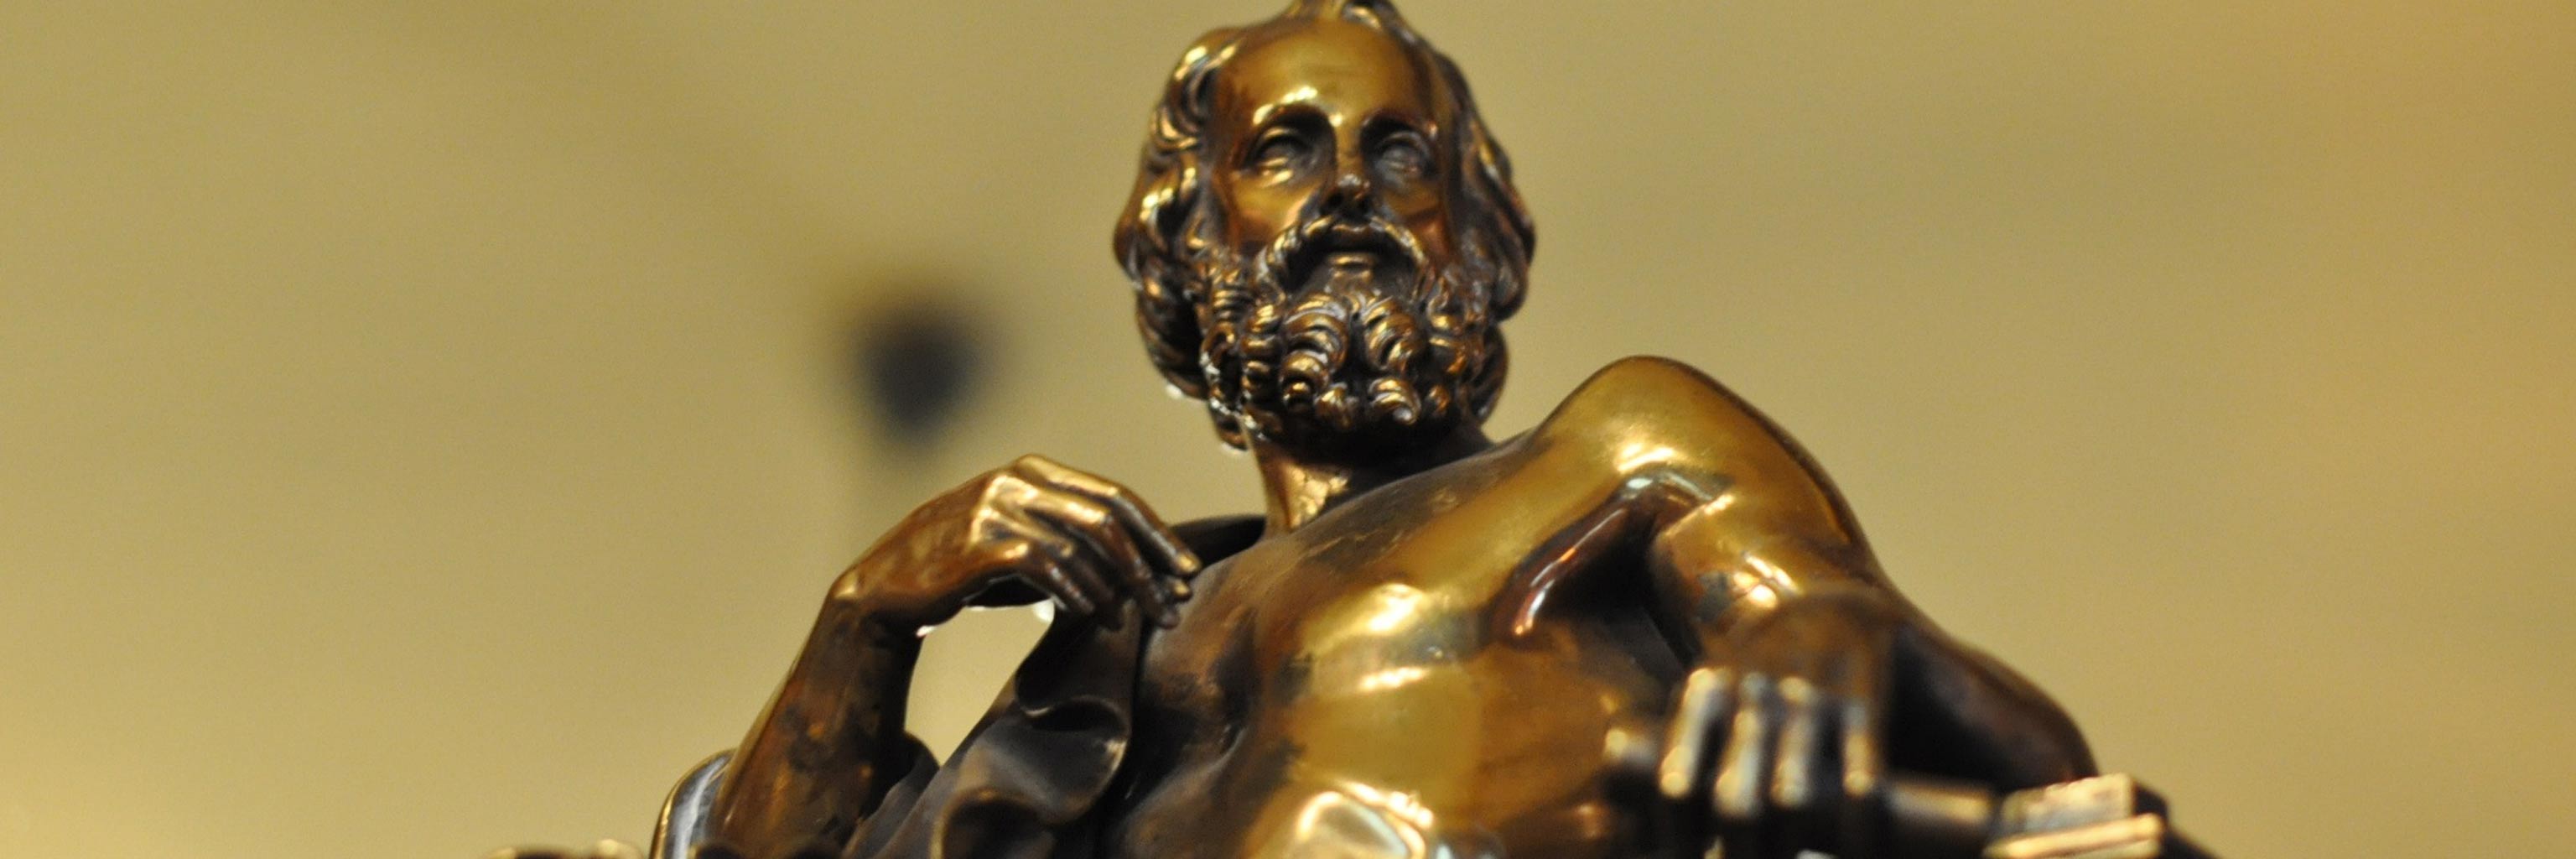 Bronze statue of Plato